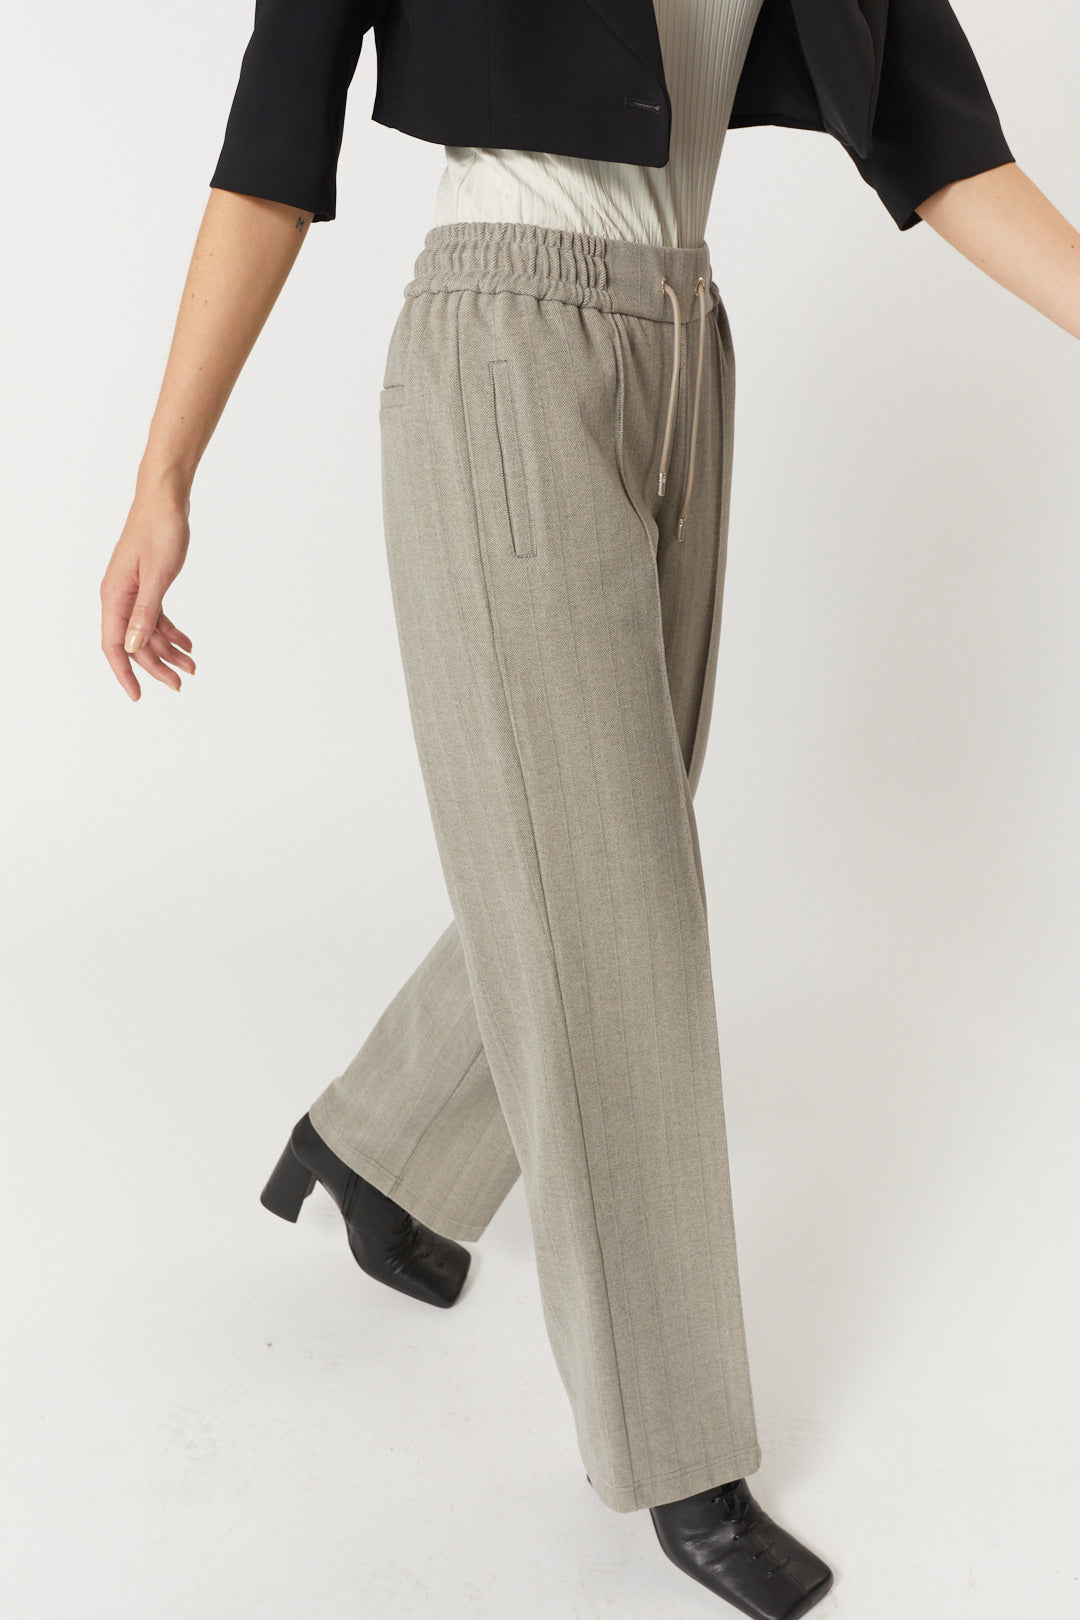 Pantalon gris à motifs chevrons | Barlee